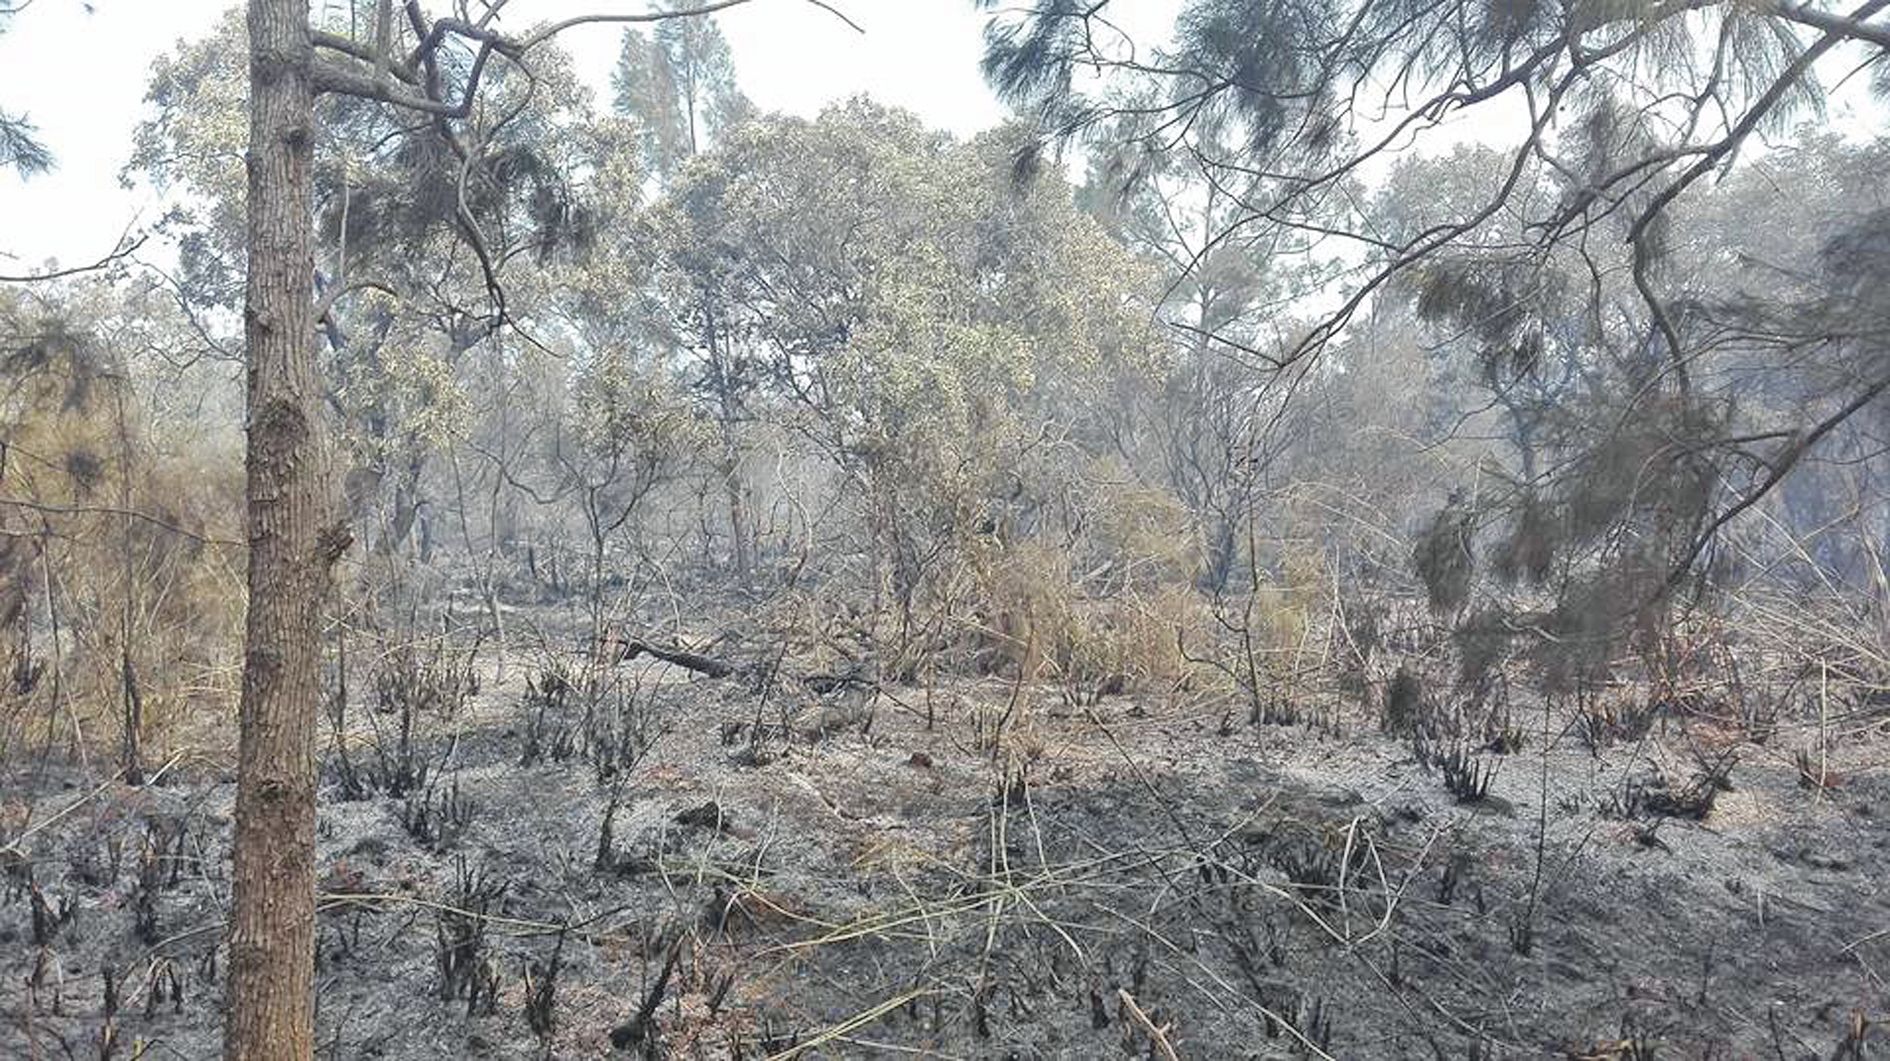 La terre très sèche après plusieurs semaines sans pluie, ainsi que des alizés soutenus ont favorisé la propagation des flammes. 562 hectares sont partis en fumée.